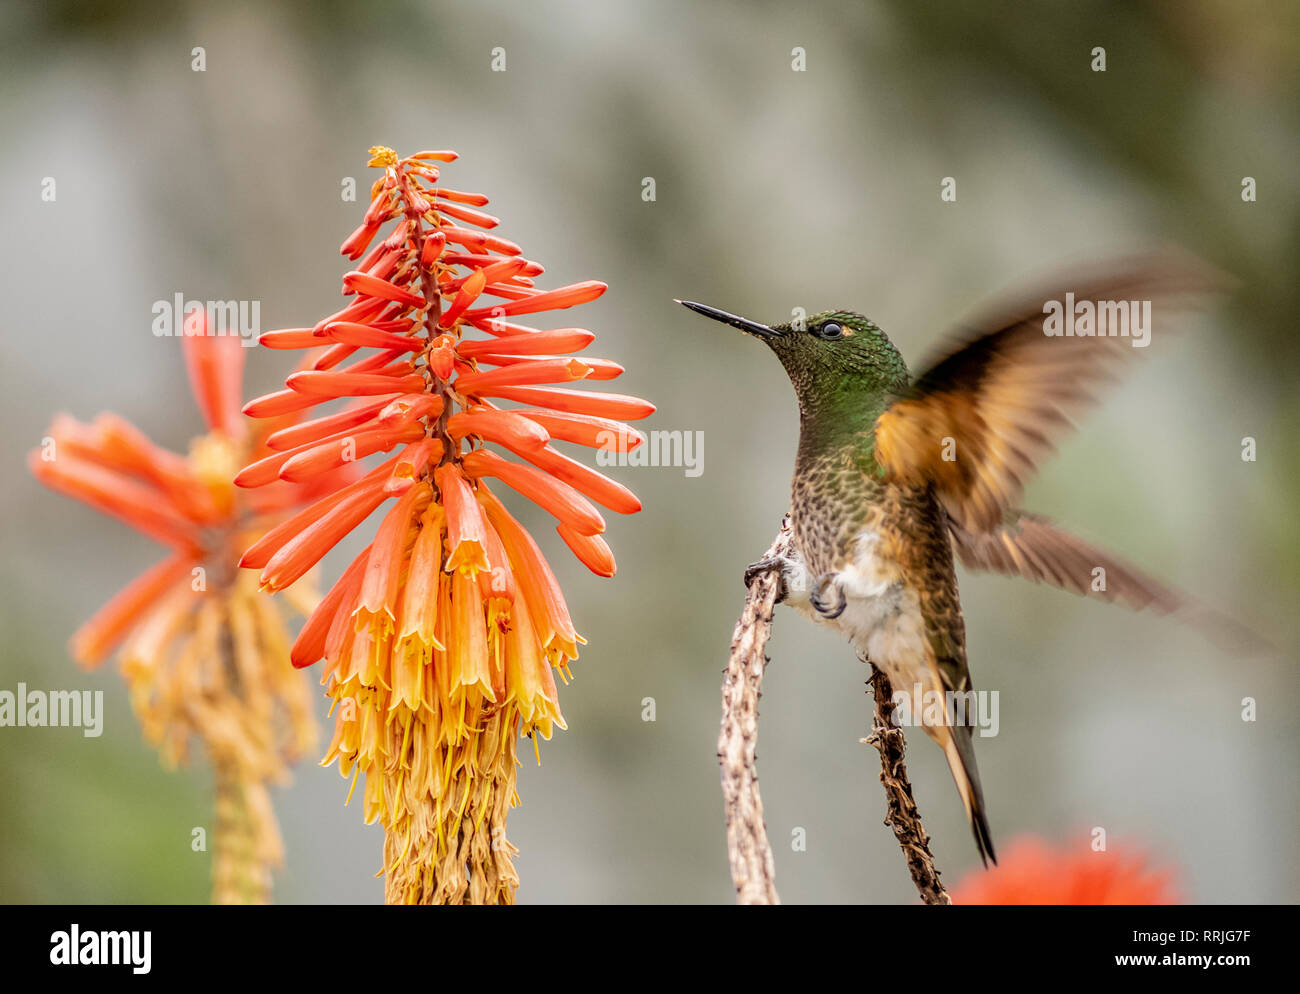 Colibri Hummingbird, La Montana, Salento, Quindio Department, Colombia, South America Stock Photo